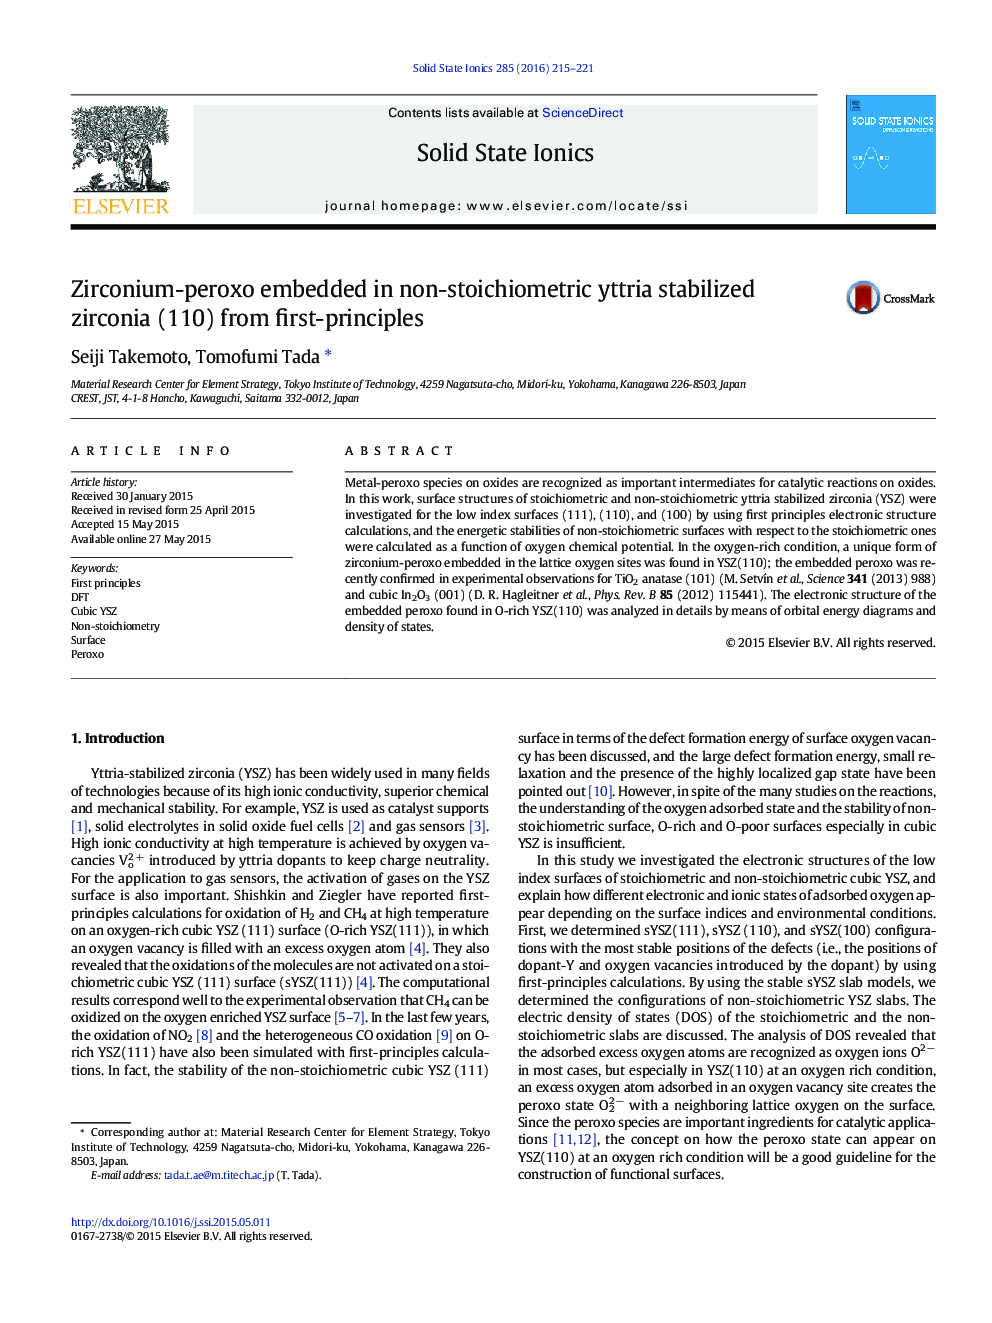 زیرکونیوم پراکسو در اتریتی غیر استویشیومتر تعبیه شده از زیرکونیا (110) از اصول اولیه 